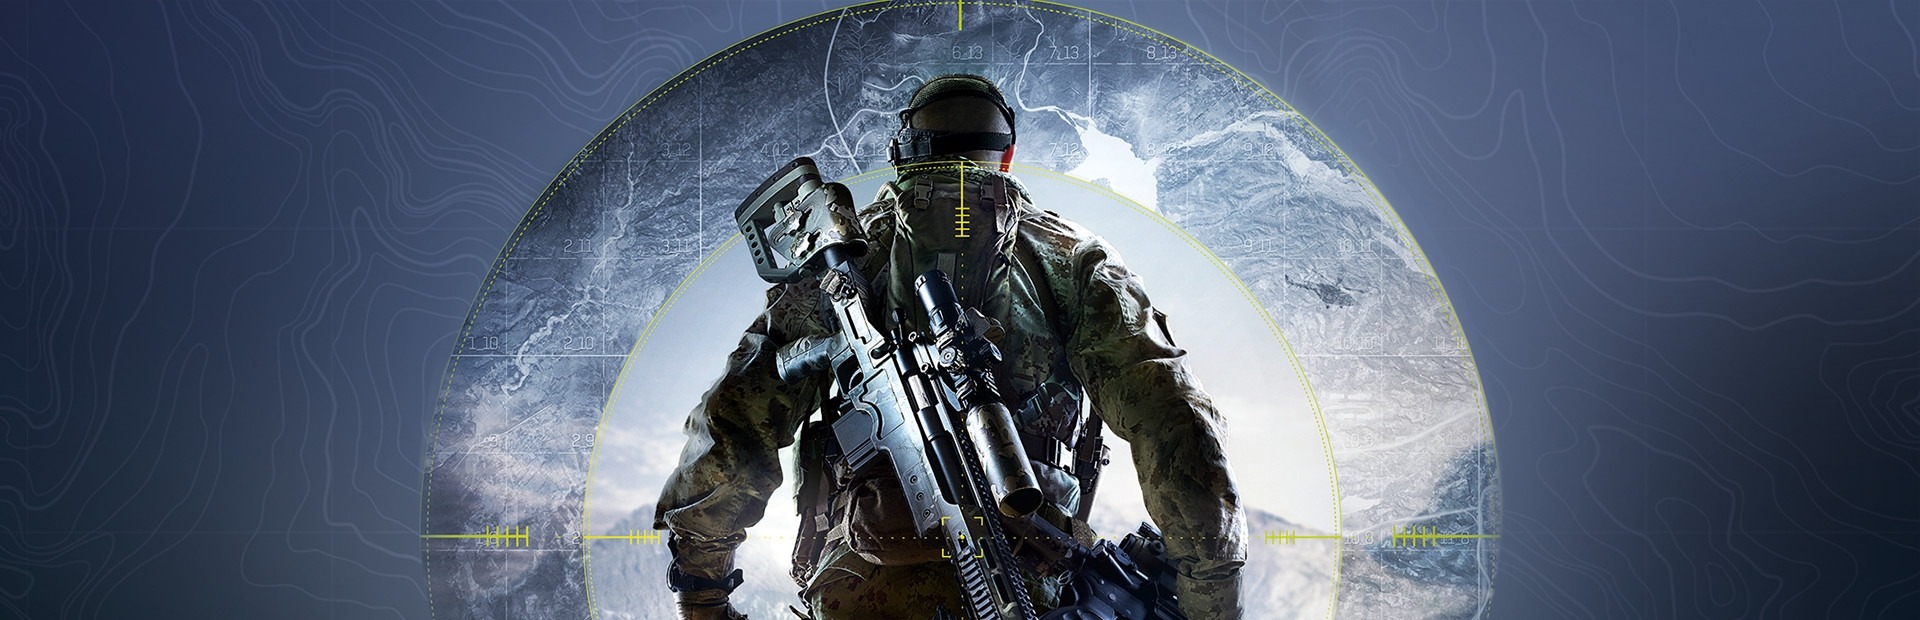 Banner Sniper Ghost Warrior 3 - The Sabotage